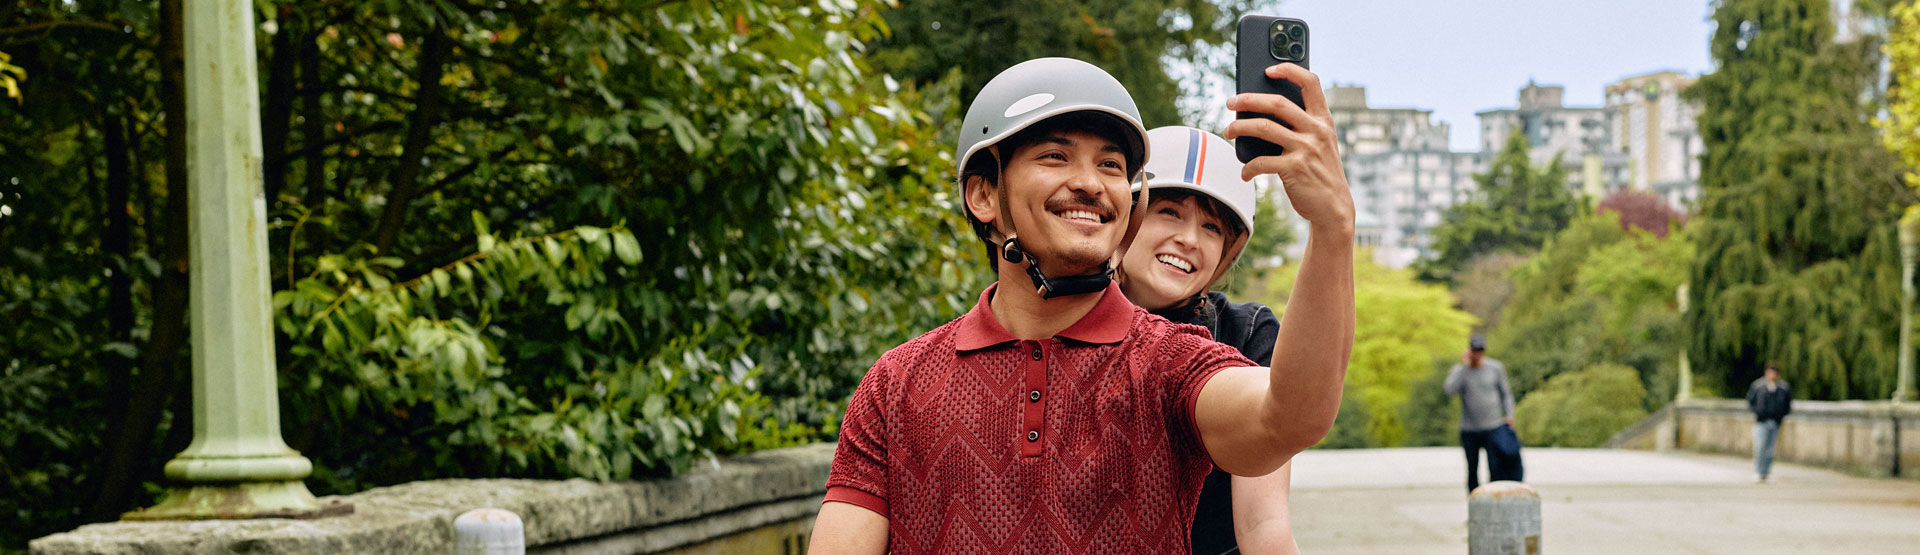 Joven pareja paseando fuera de la ciudad, usando cascos para bicicletas y tomándose una selfi.